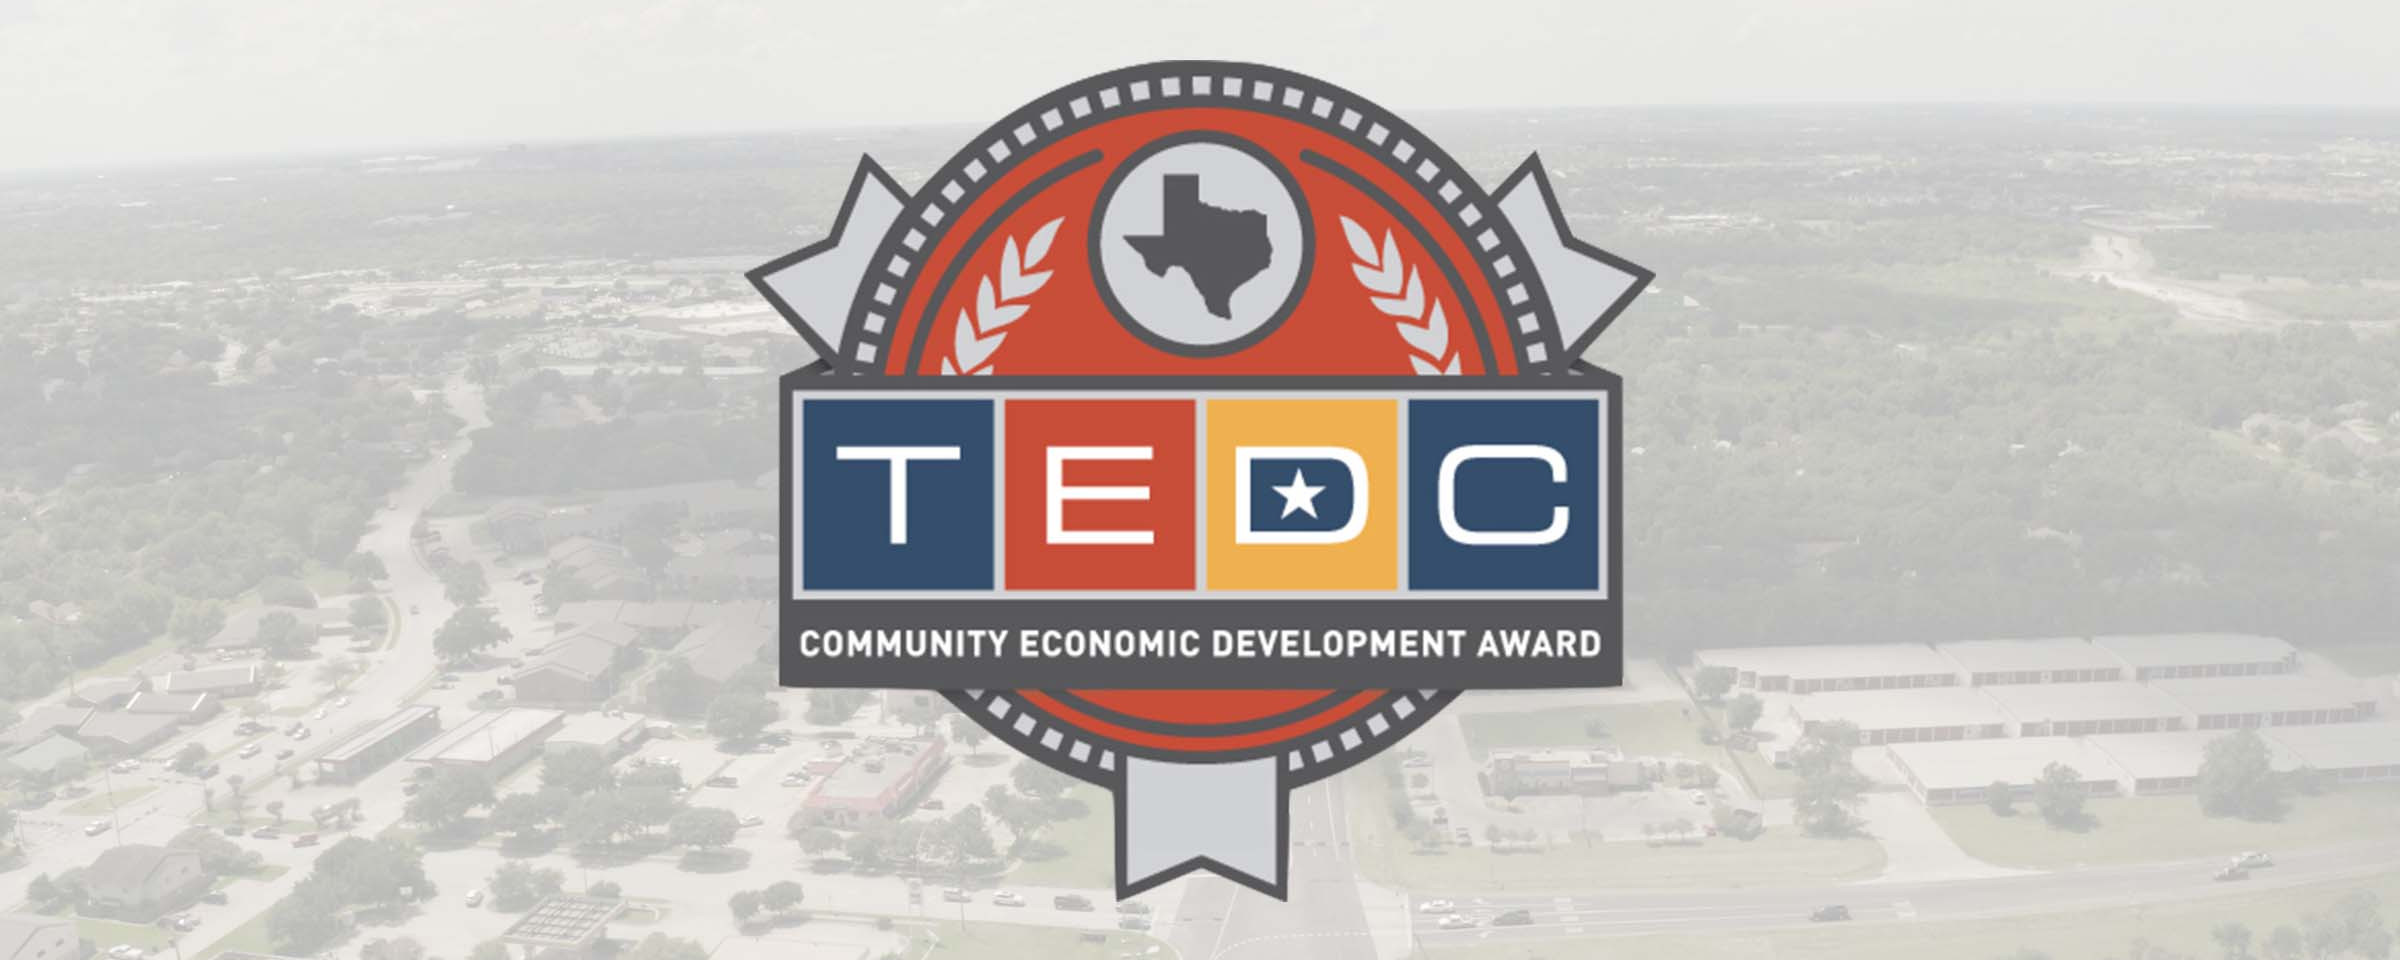 TEDC CEDA award